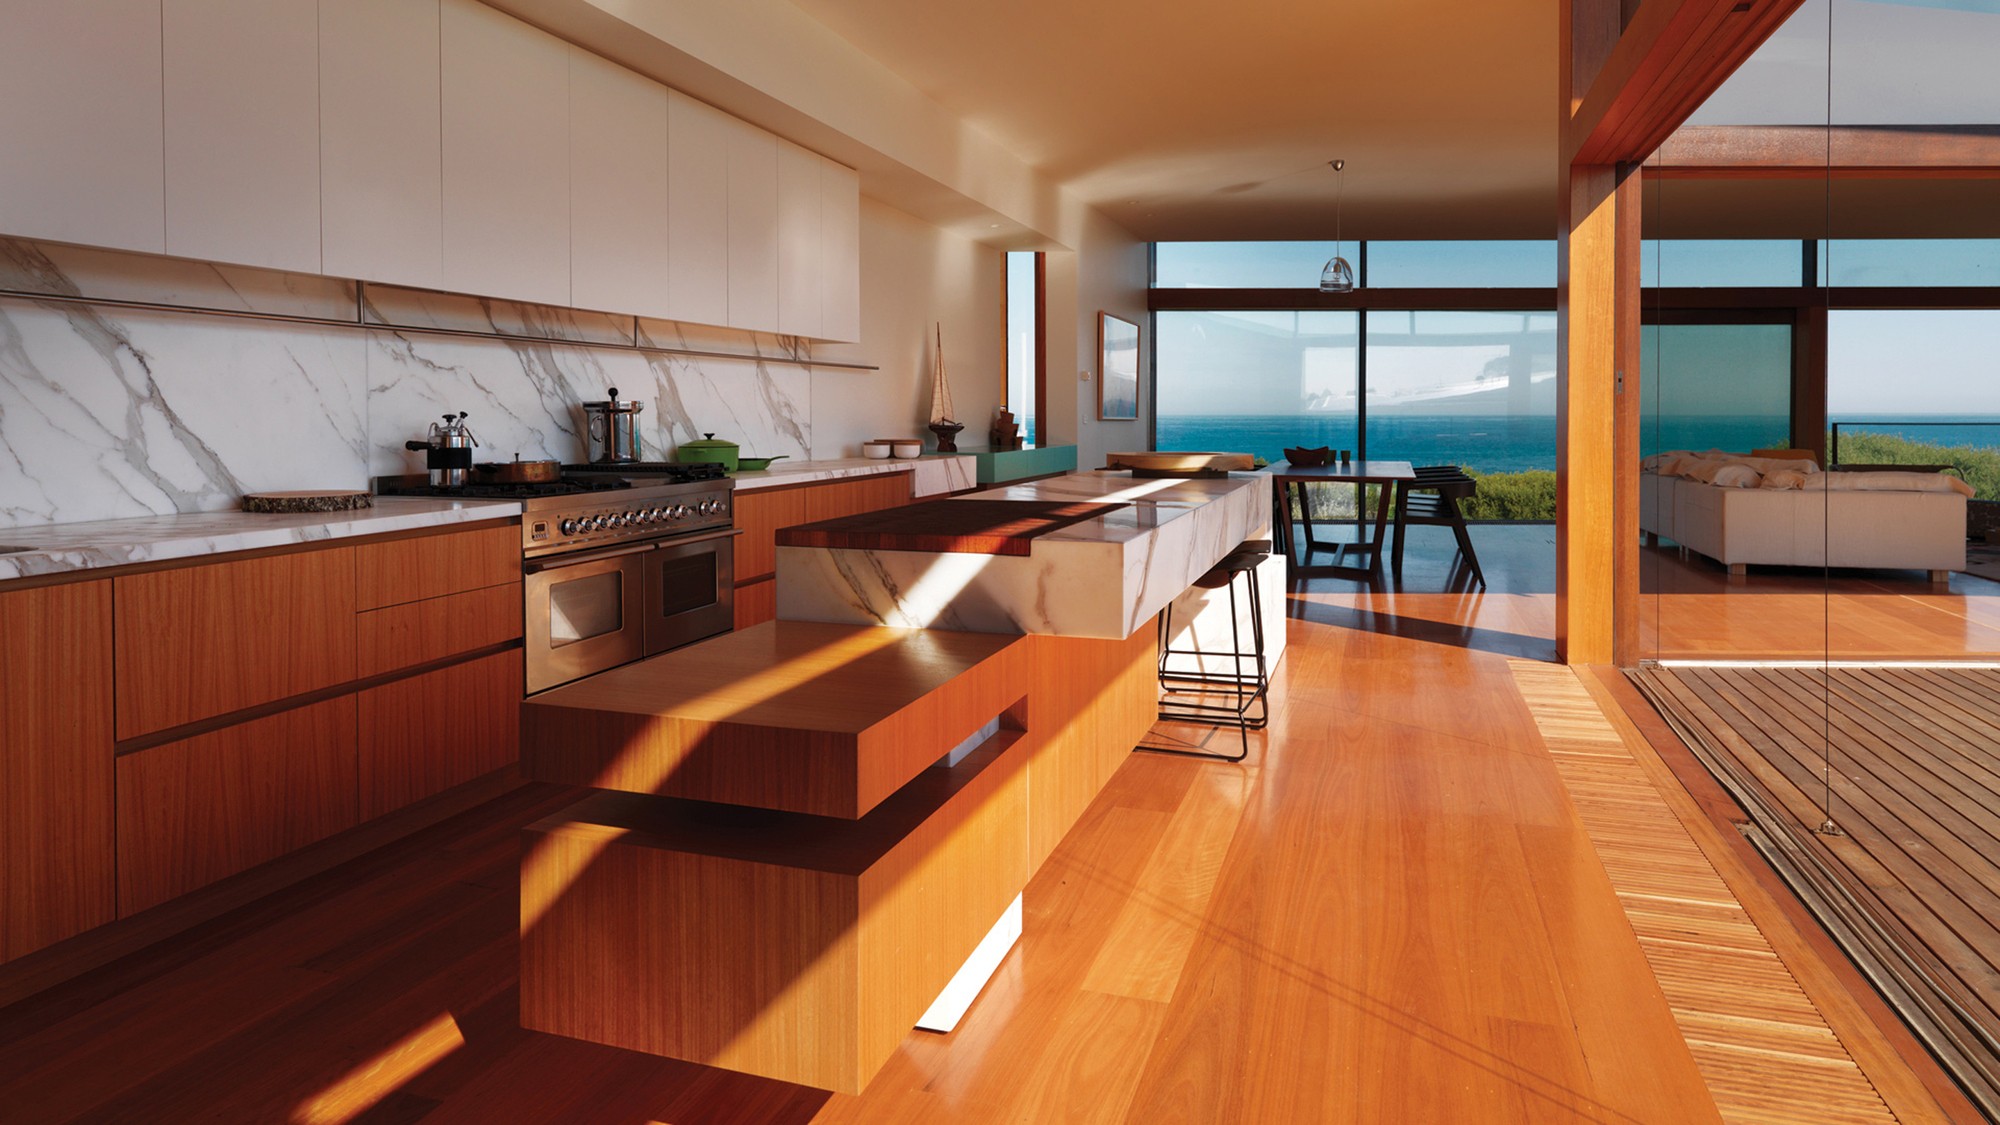 General 2000x1125 room luxury interior kitchen indoors oven